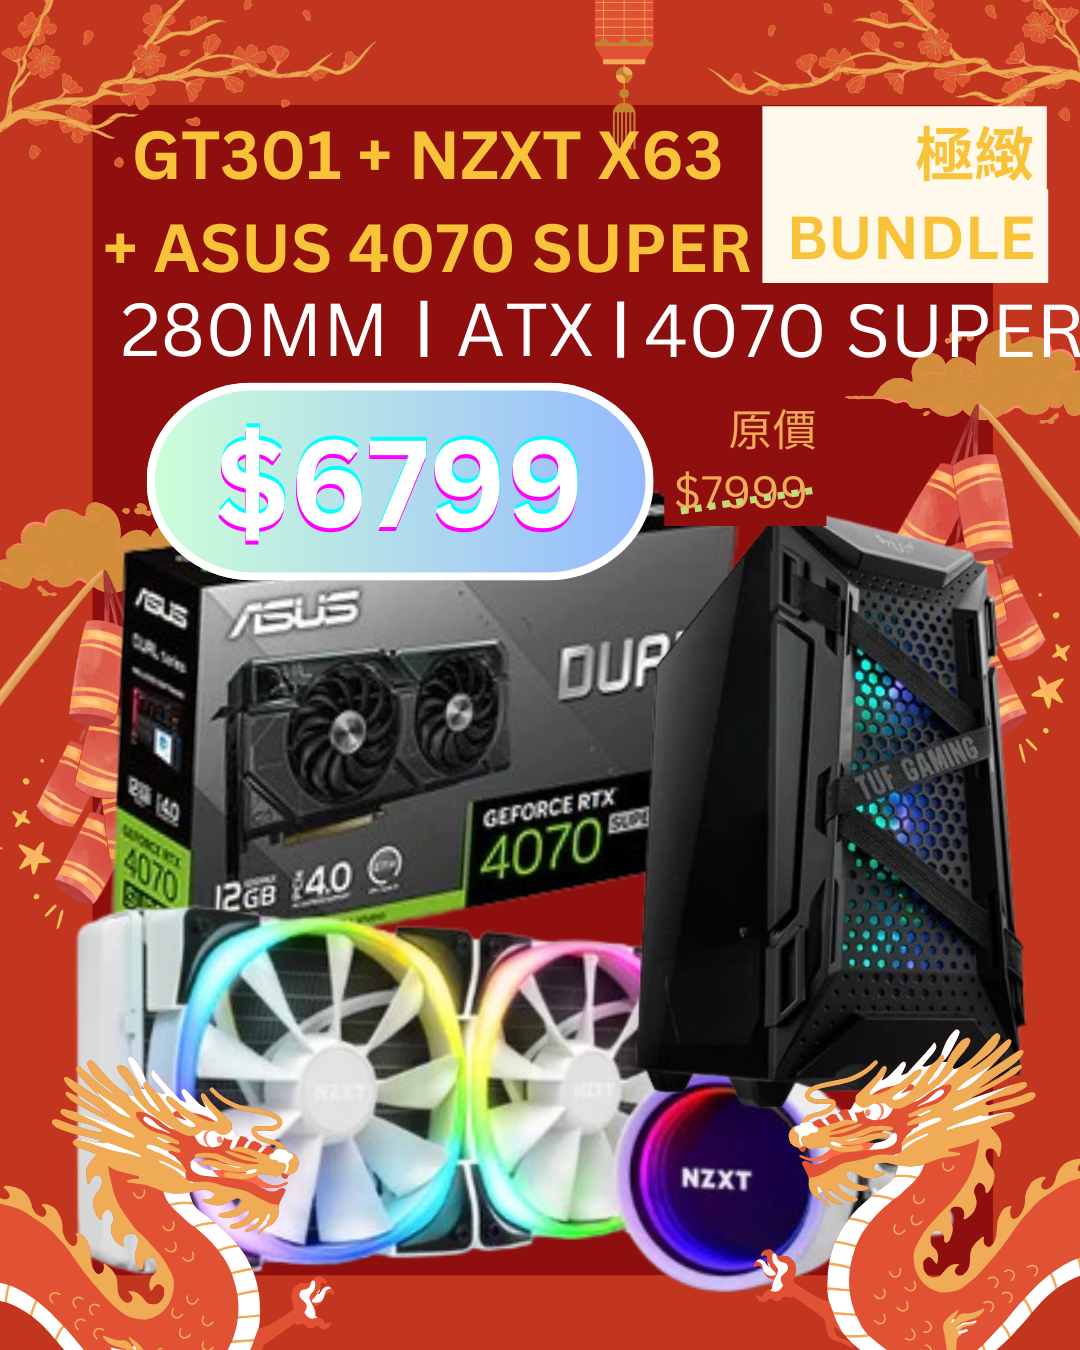 $6799 ASUS TUF Gaming GT301 ATX CASE + ASUS 4070 SUPER +NZXT Kraken X63 RGB 280mm  冷排水冷 極緻BUNDLE